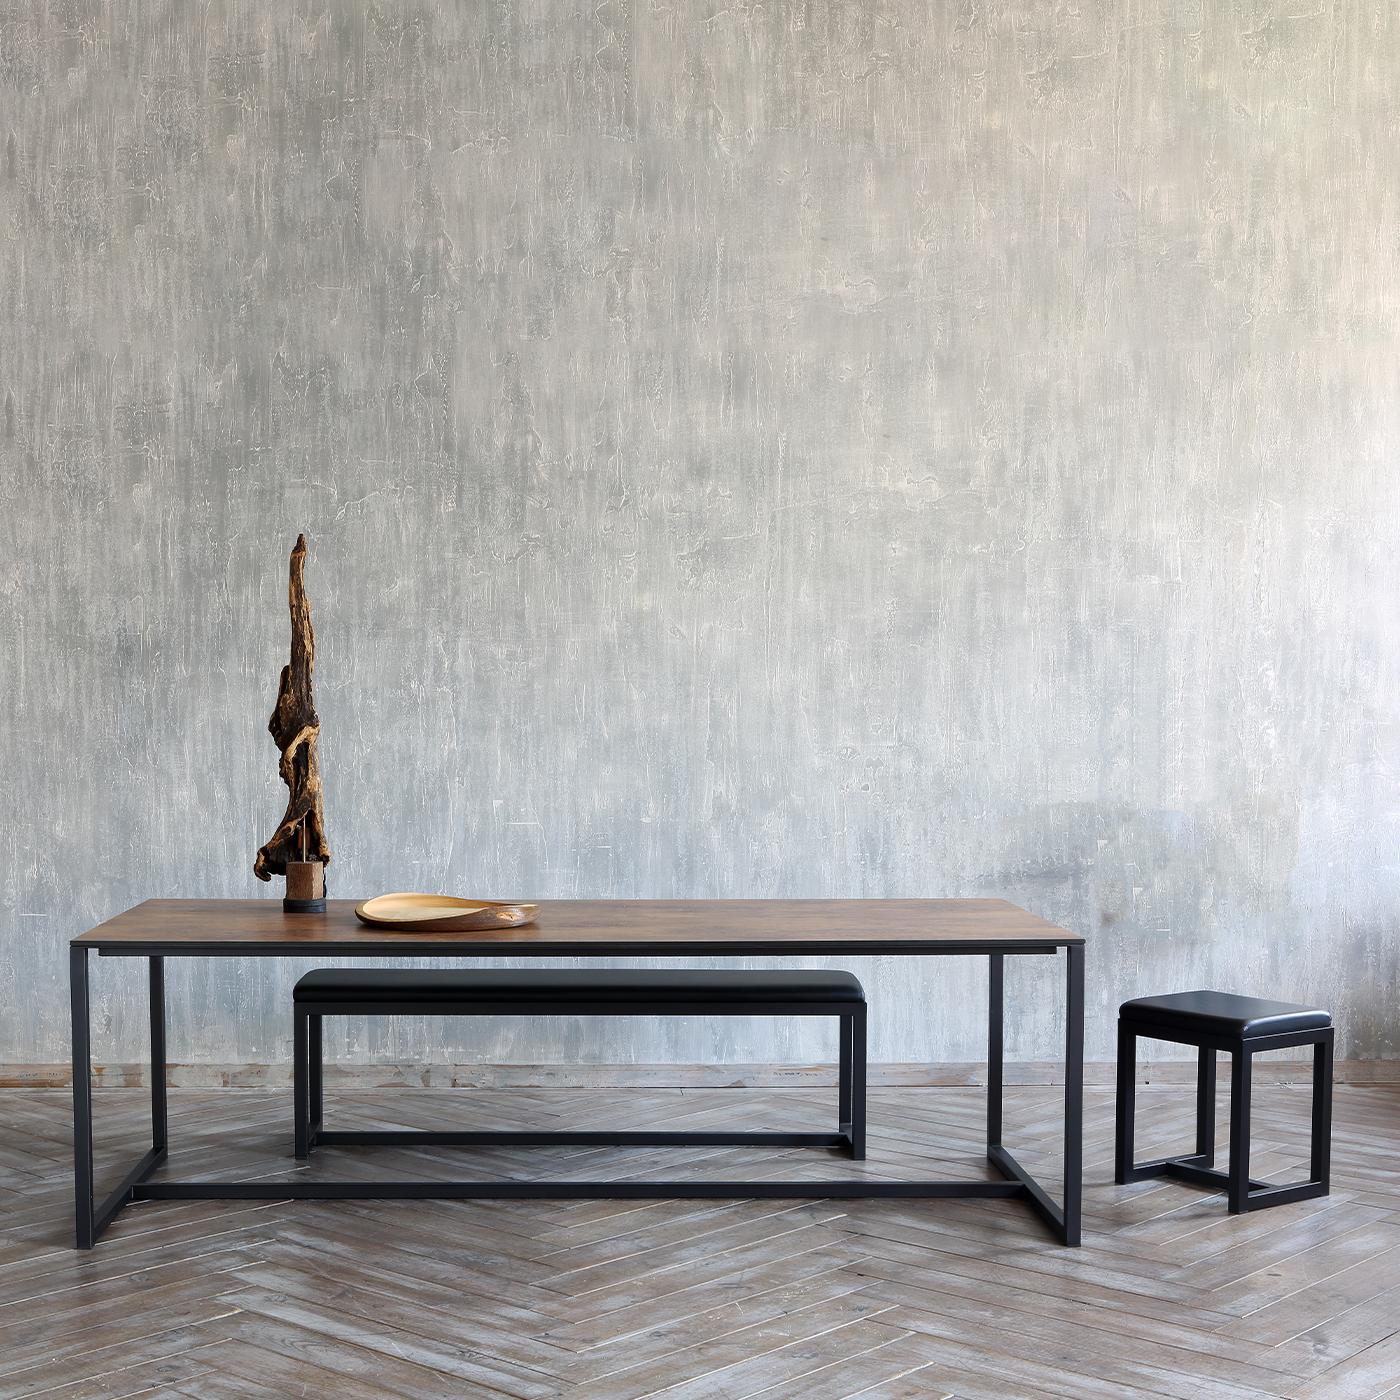 Cette banquette linéaire de Maurizio Peregalli allie une simplicité élégante à un confort absolu. La structure en cuivre du fauteuil, reliée par une ligne structurelle à la base, présente une finition raffinée en noir sablé - également disponible